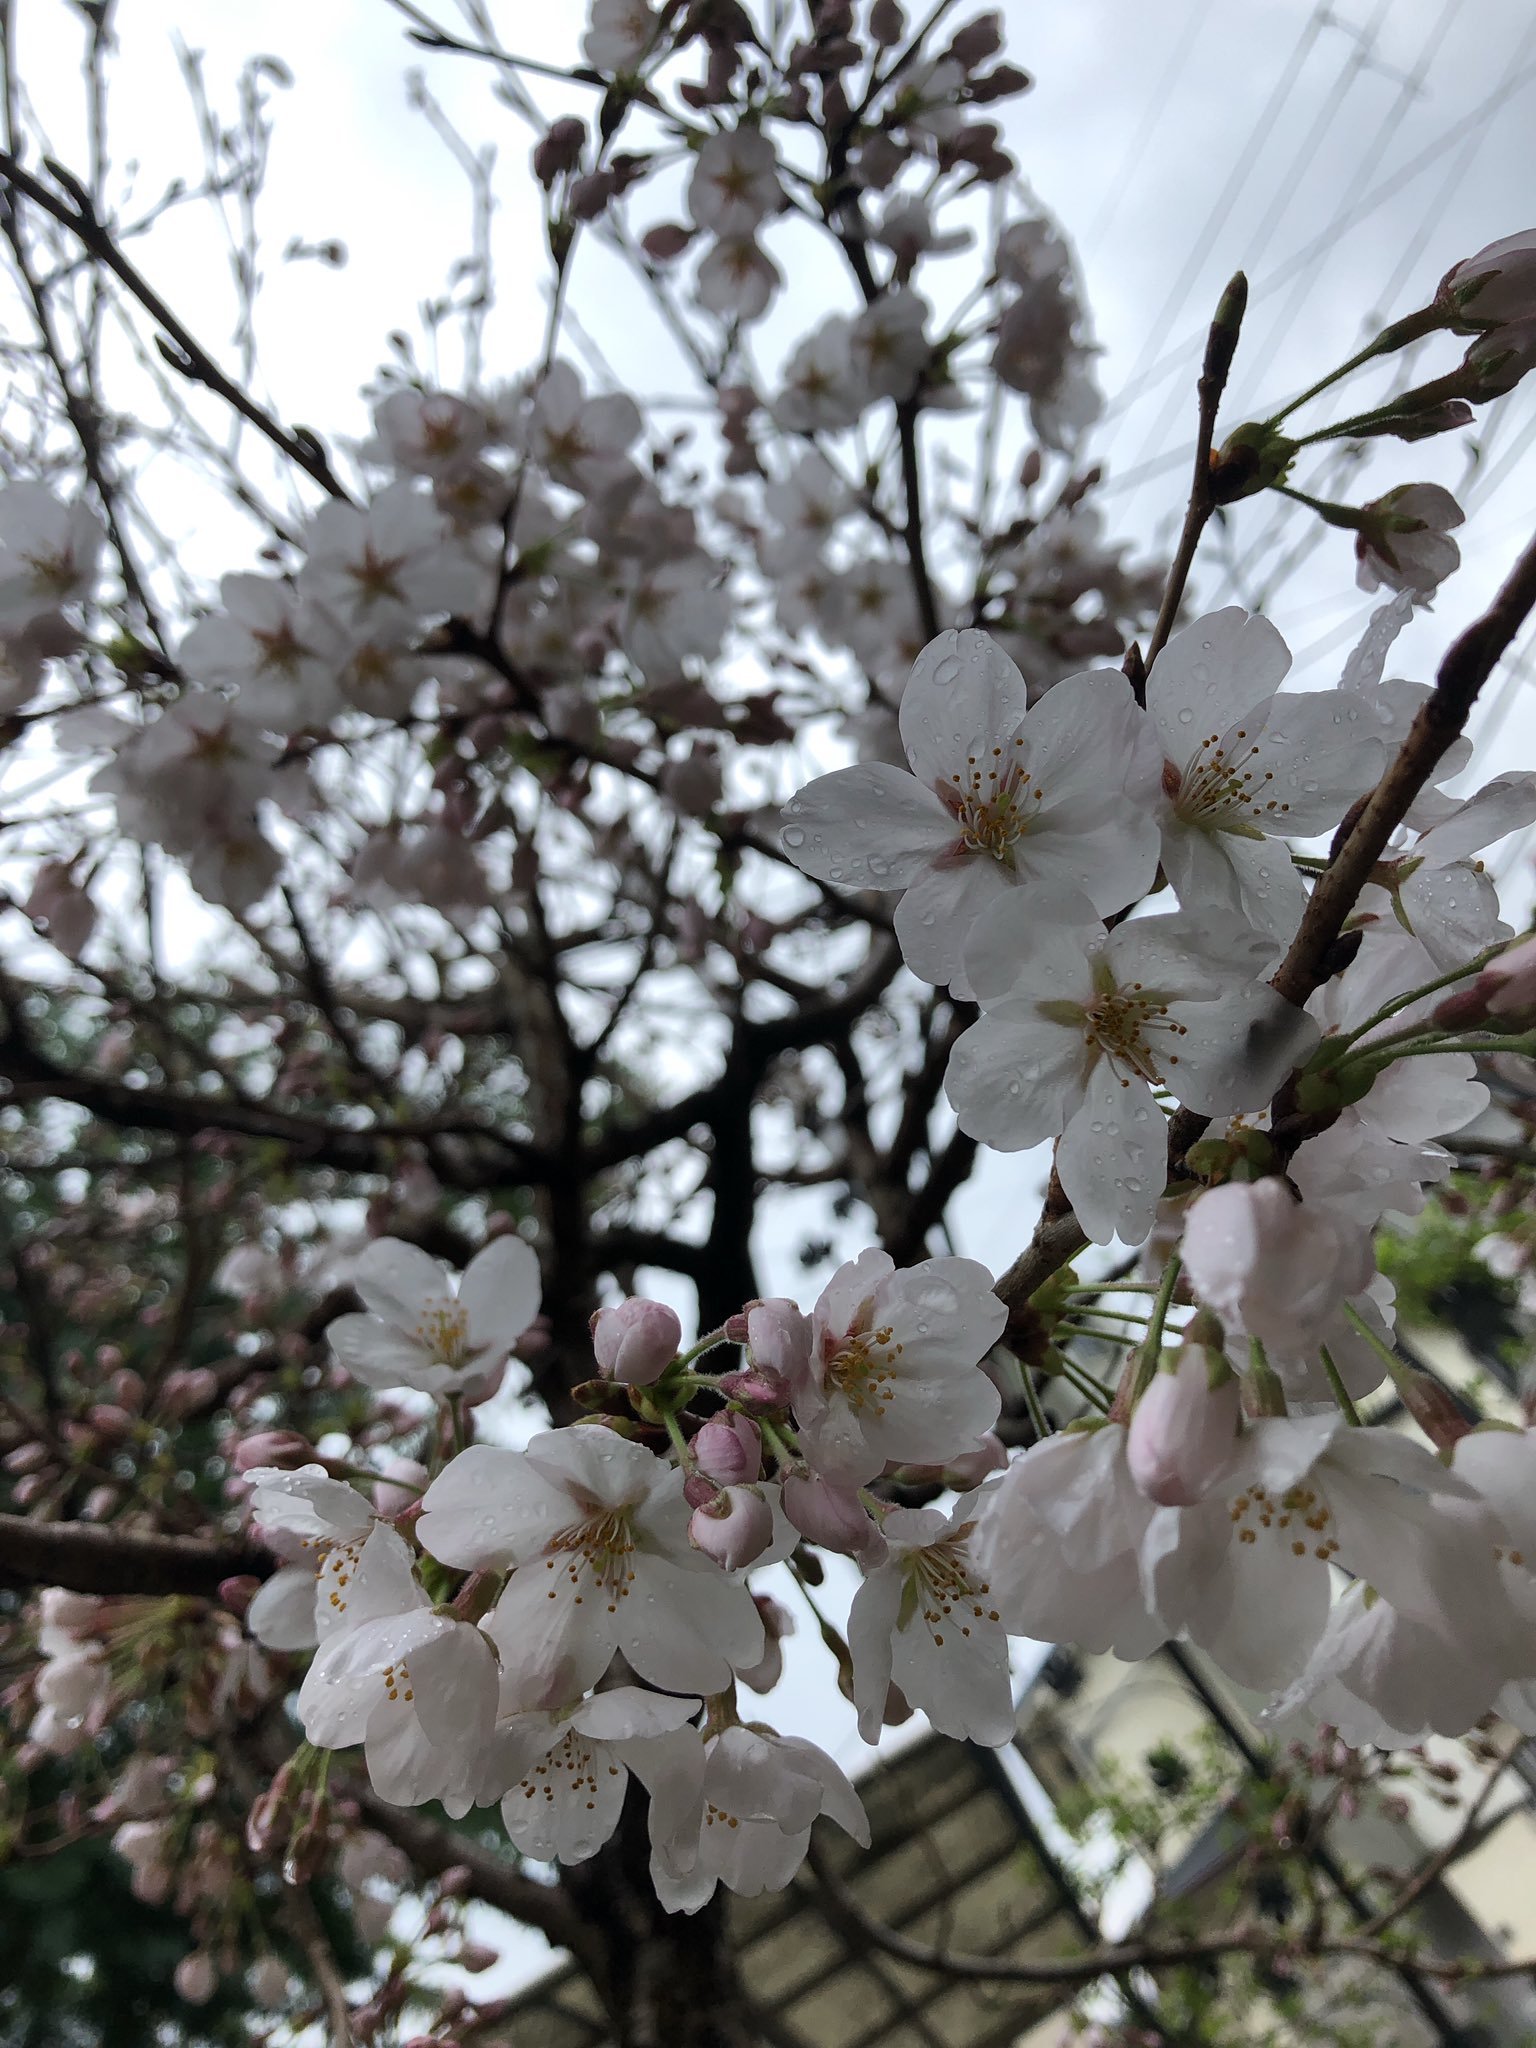 桜かをり 桜が咲いてた 春 桜 おしゃれ おしゃれ画像 かめら きれい カメラマン 空 天気 風景 T Co 1qyogpdfhy Twitter